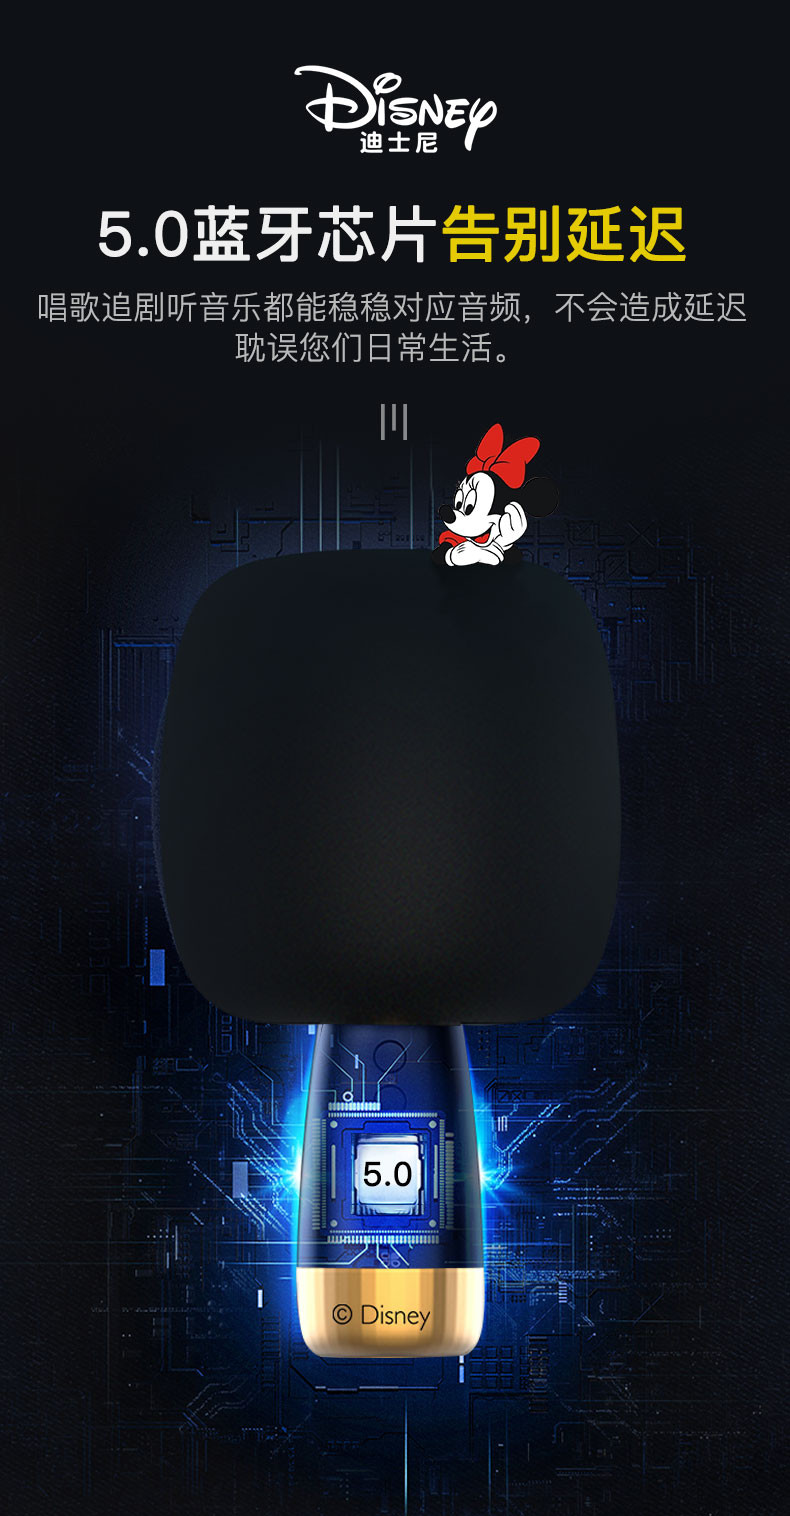 迪士尼/Disney 唱歌机音响一体无线麦克风 CE-857